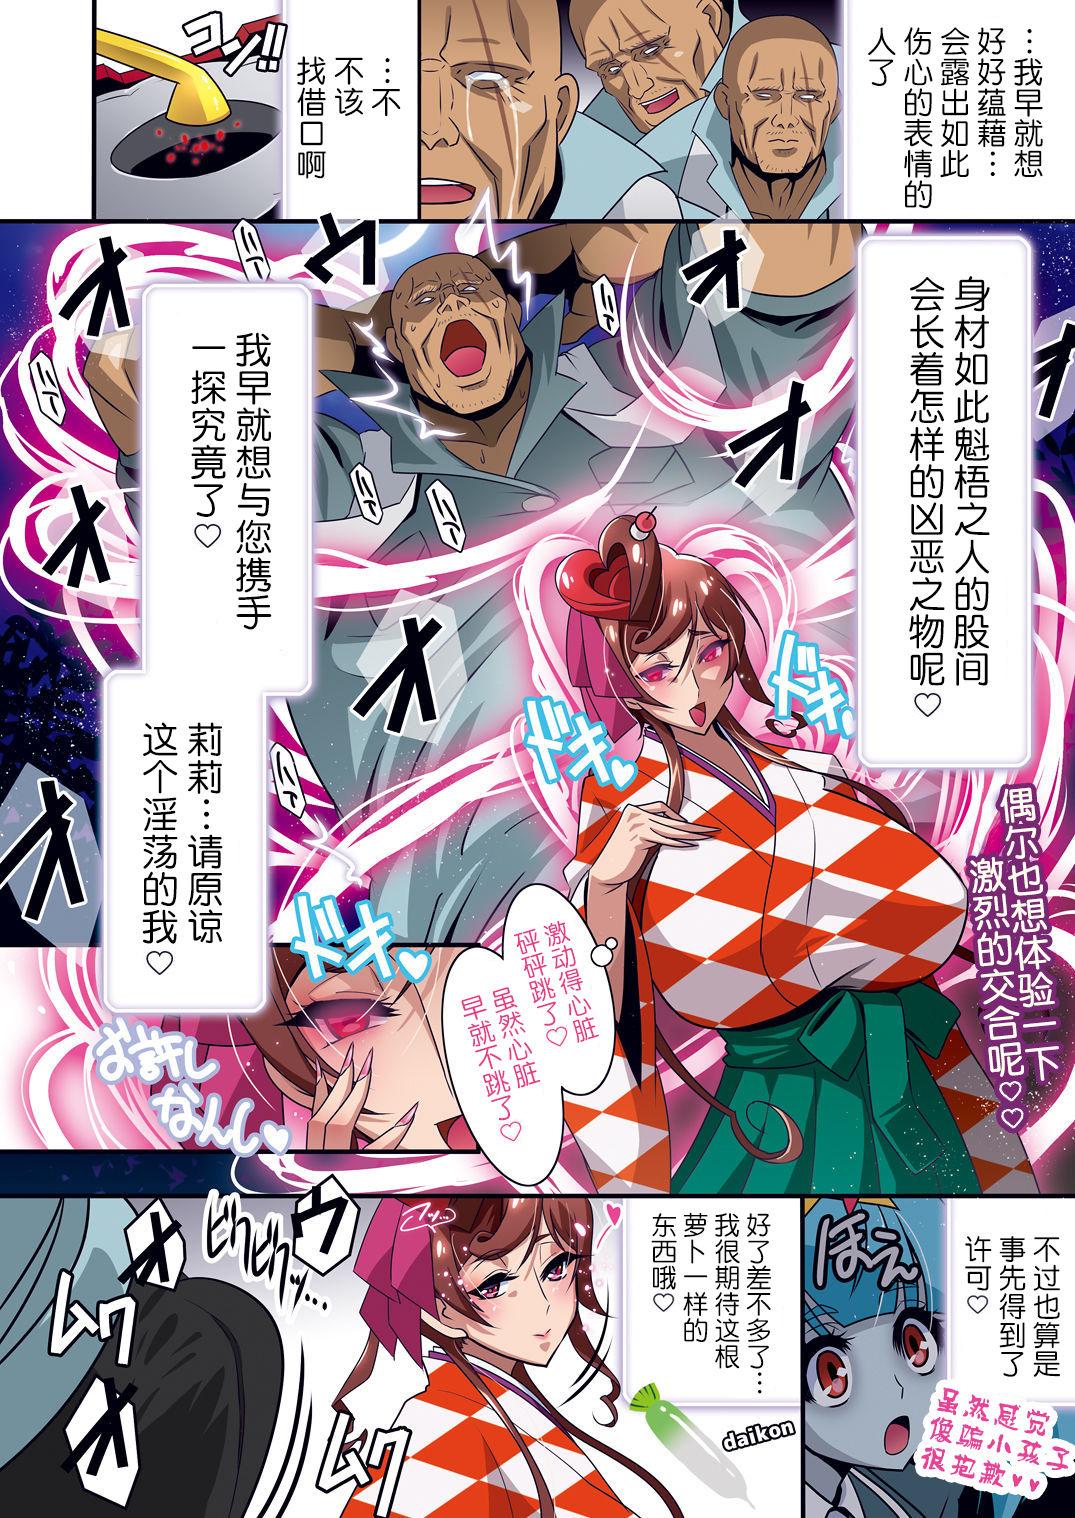 Putas Nee-san vs Chougokubuto Yuugiri Tai Takeo Gekka no Koubousen - Zombie land saga Ball Licking - Page 7